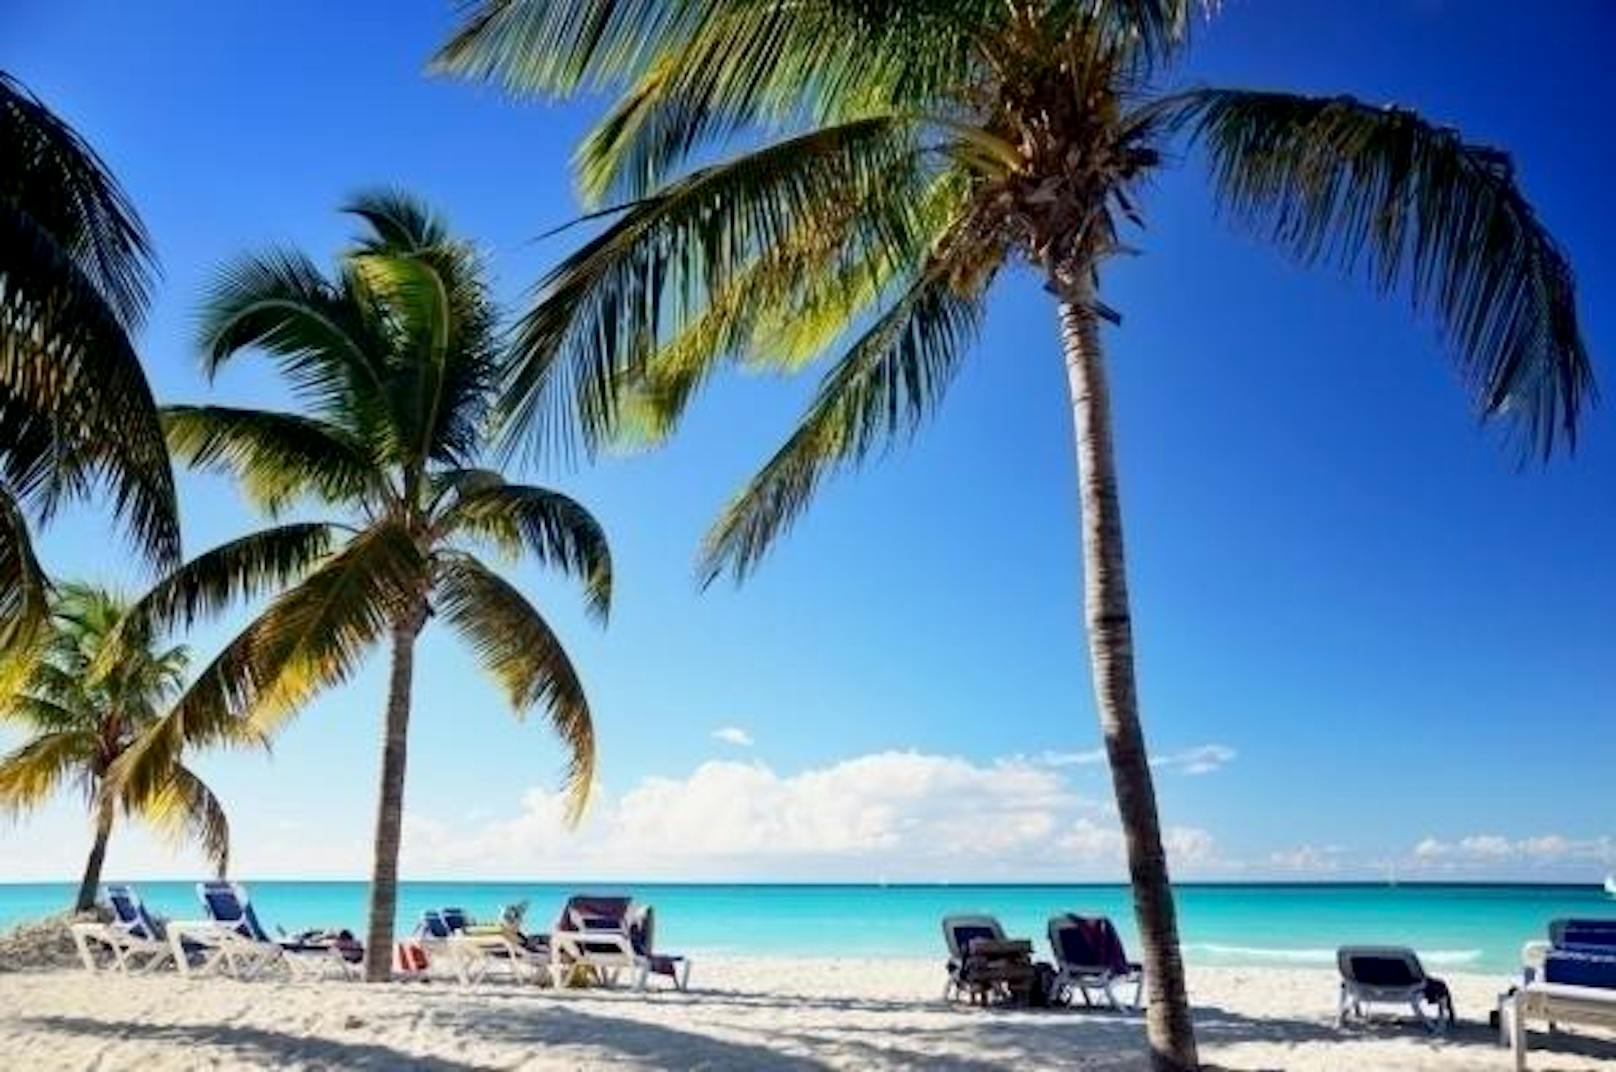 <b>Platz drei: Varadero Beach, Varadero, Kuba:</b> Die im Norden Kubas gelegene Halbinsel Varadero ragt zwölf Kilometer in die karibische See. Ganz zum Gefallen der Reisecommunity: "Kilometerlanger weißer, feiner Sandstrand mit Palmen. Türkisfarbenes Wasser, aus dem man gar nicht mehr raussteigen will. Sehr zu empfehlen!", heißt es etwa.